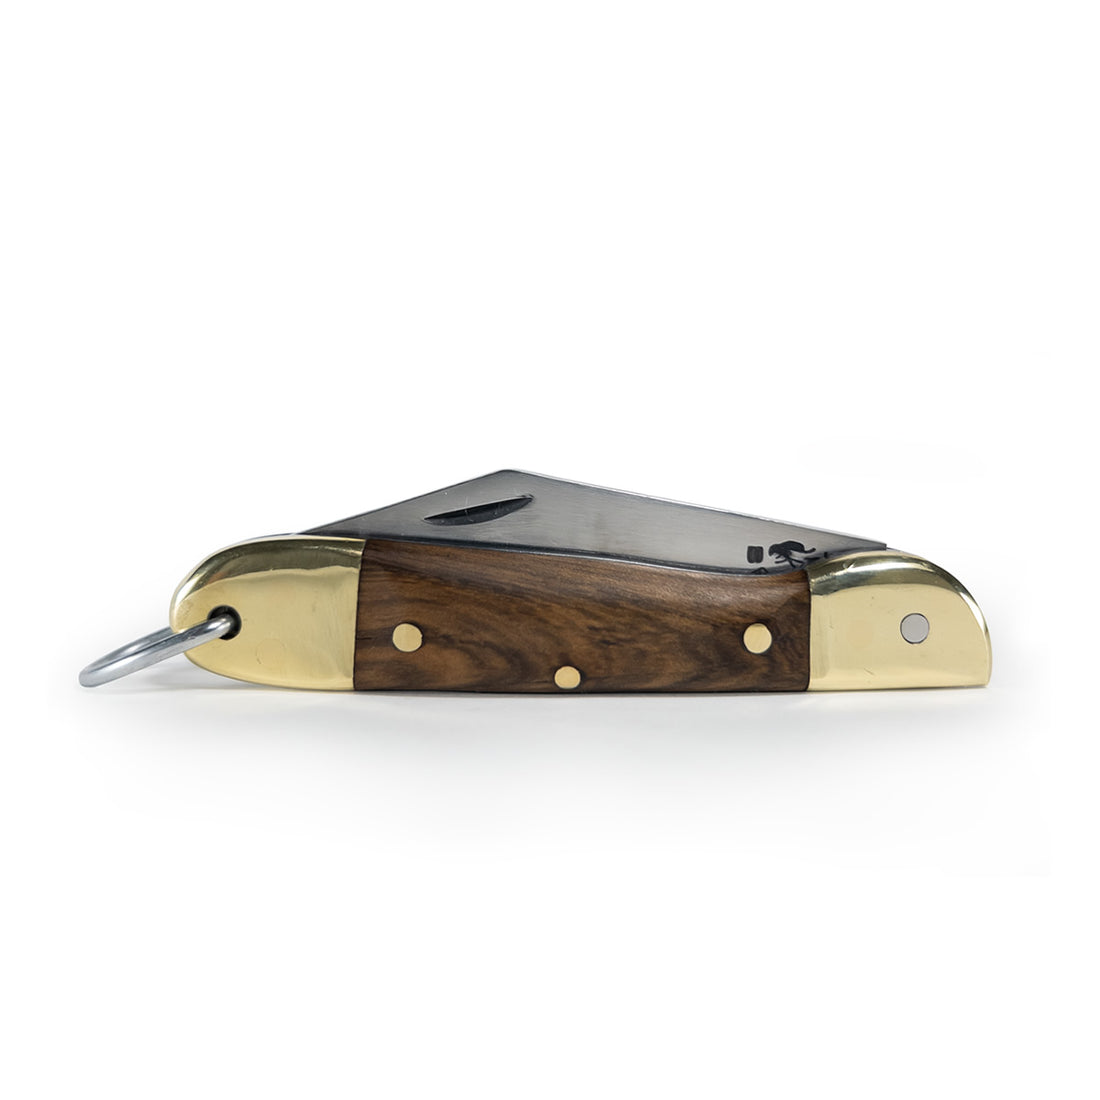 Furbem - Canivete modelo Patagonia com cabo em madeira e lâmina forjada em aço inox.